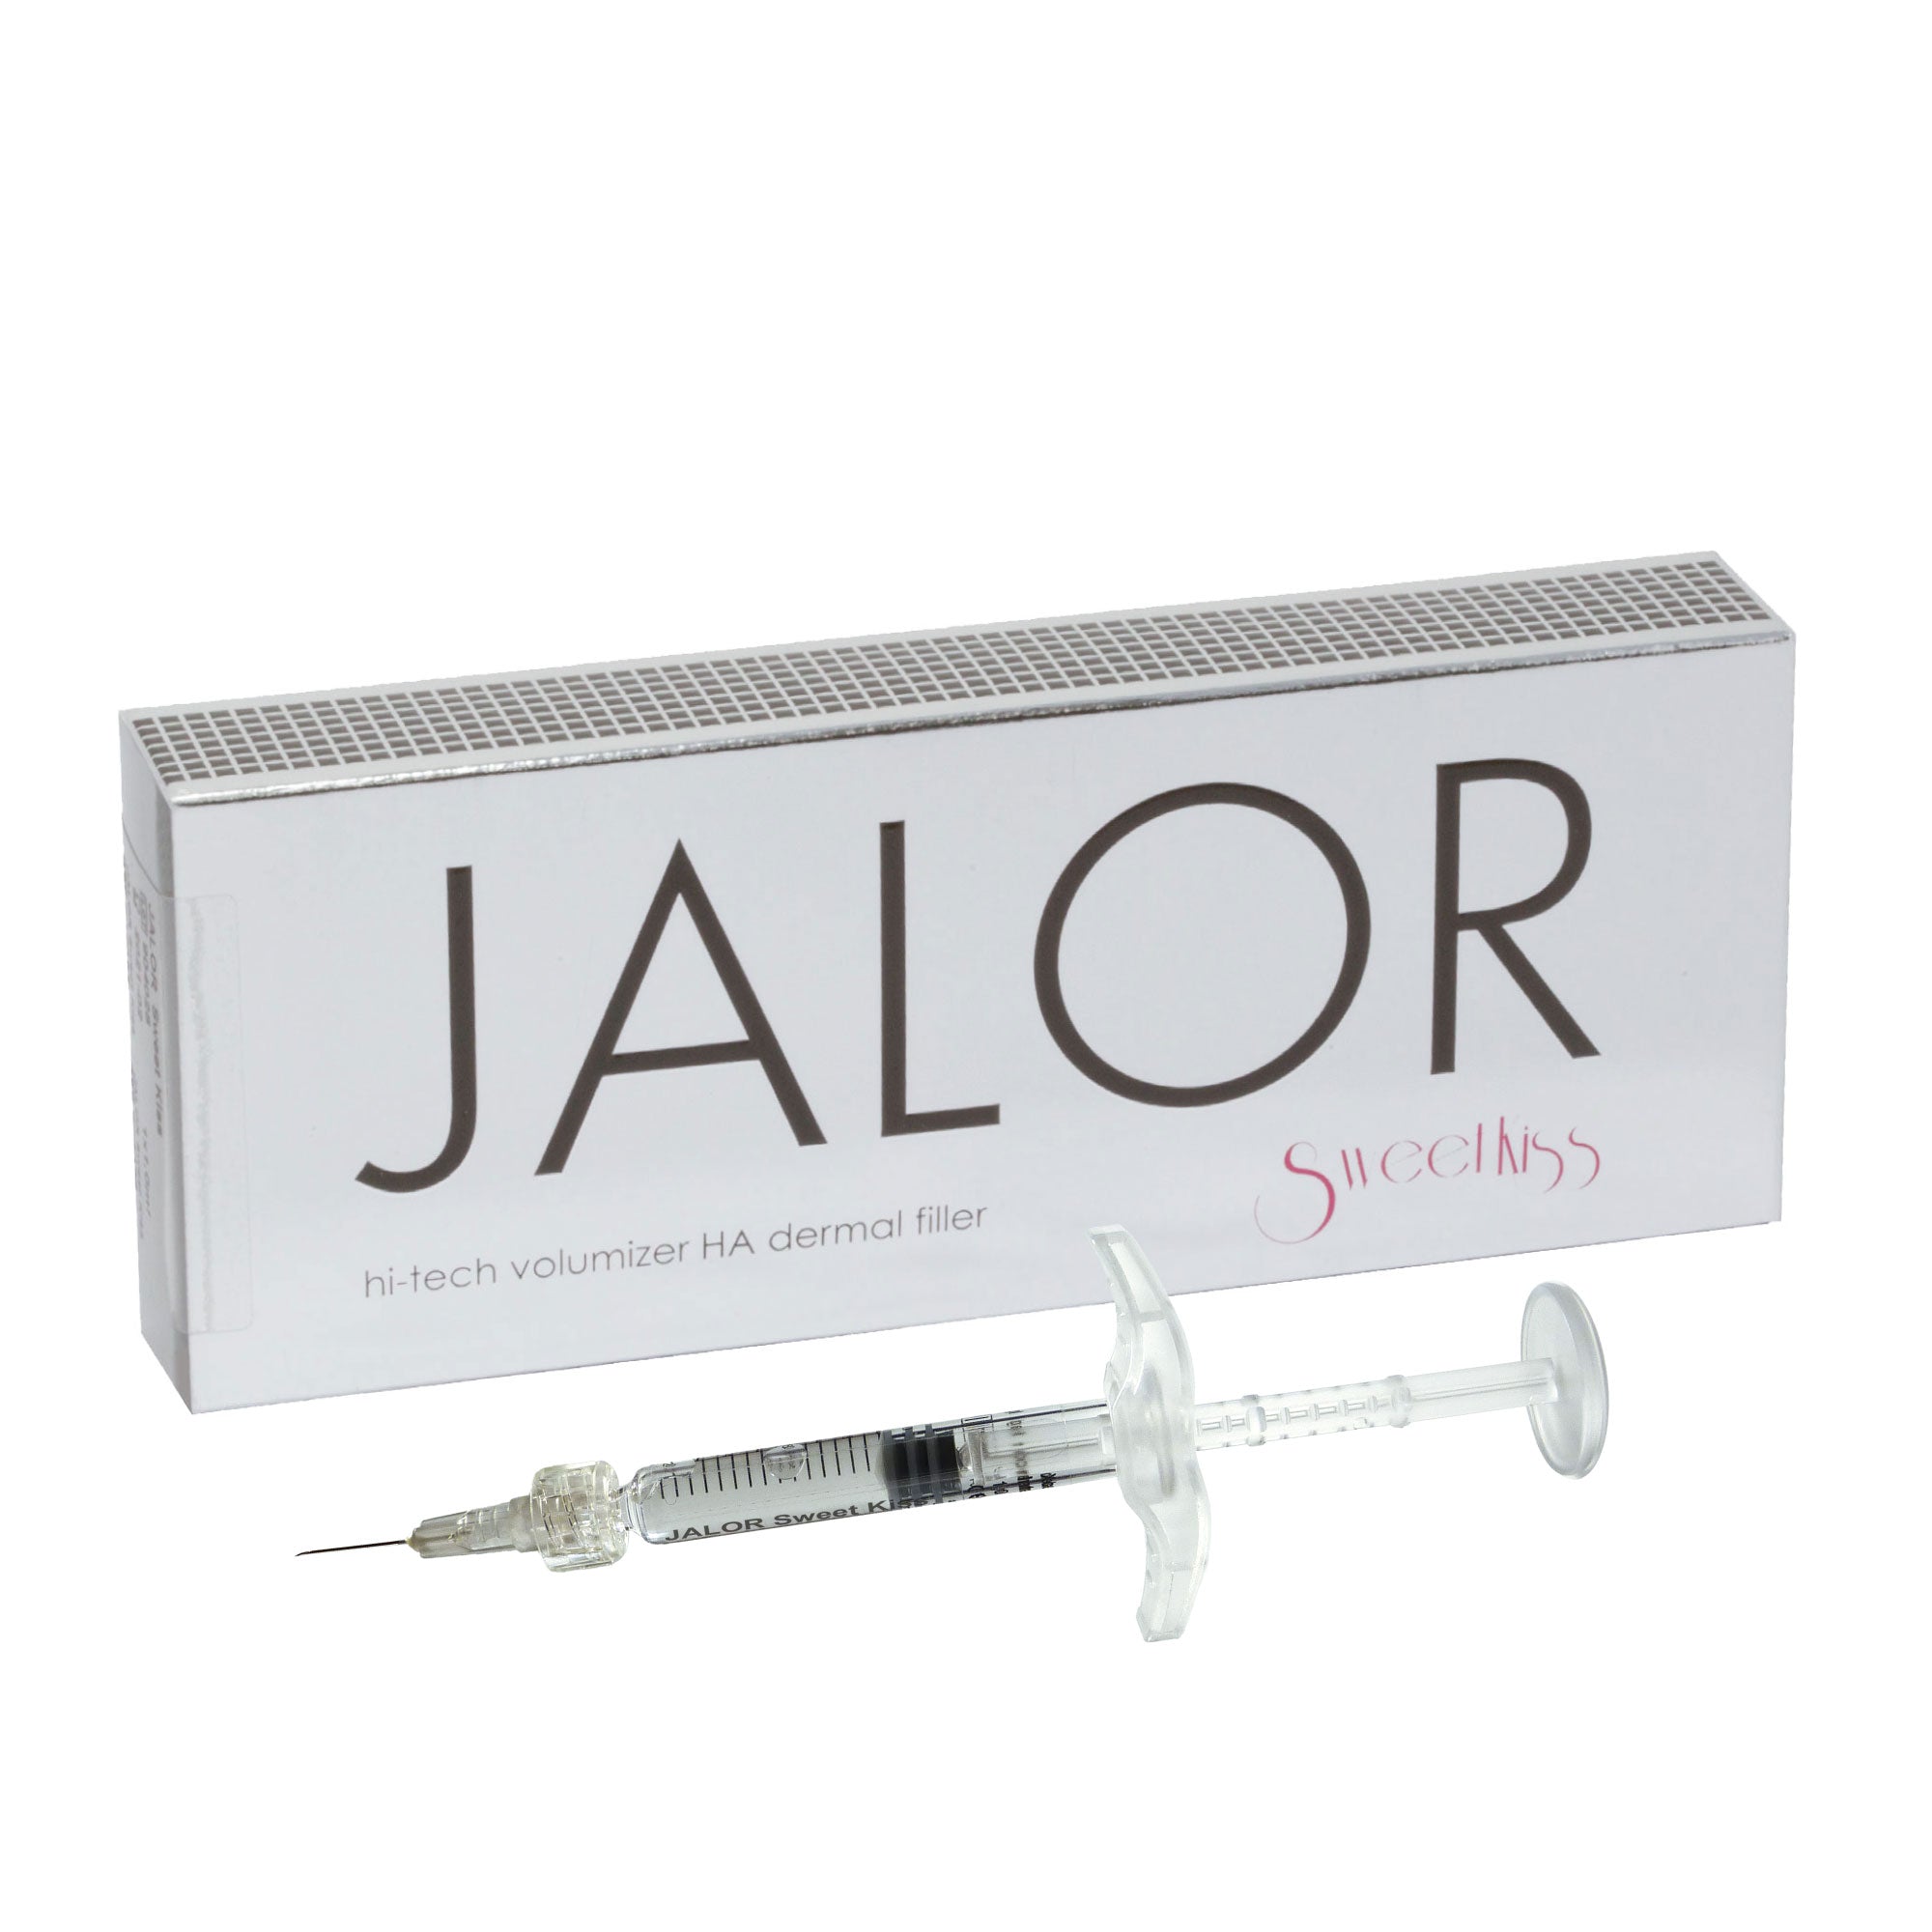 JALOR SWEET KISS - Wypełniacz skórny zwiększający objętość z kwasem hialuronowym